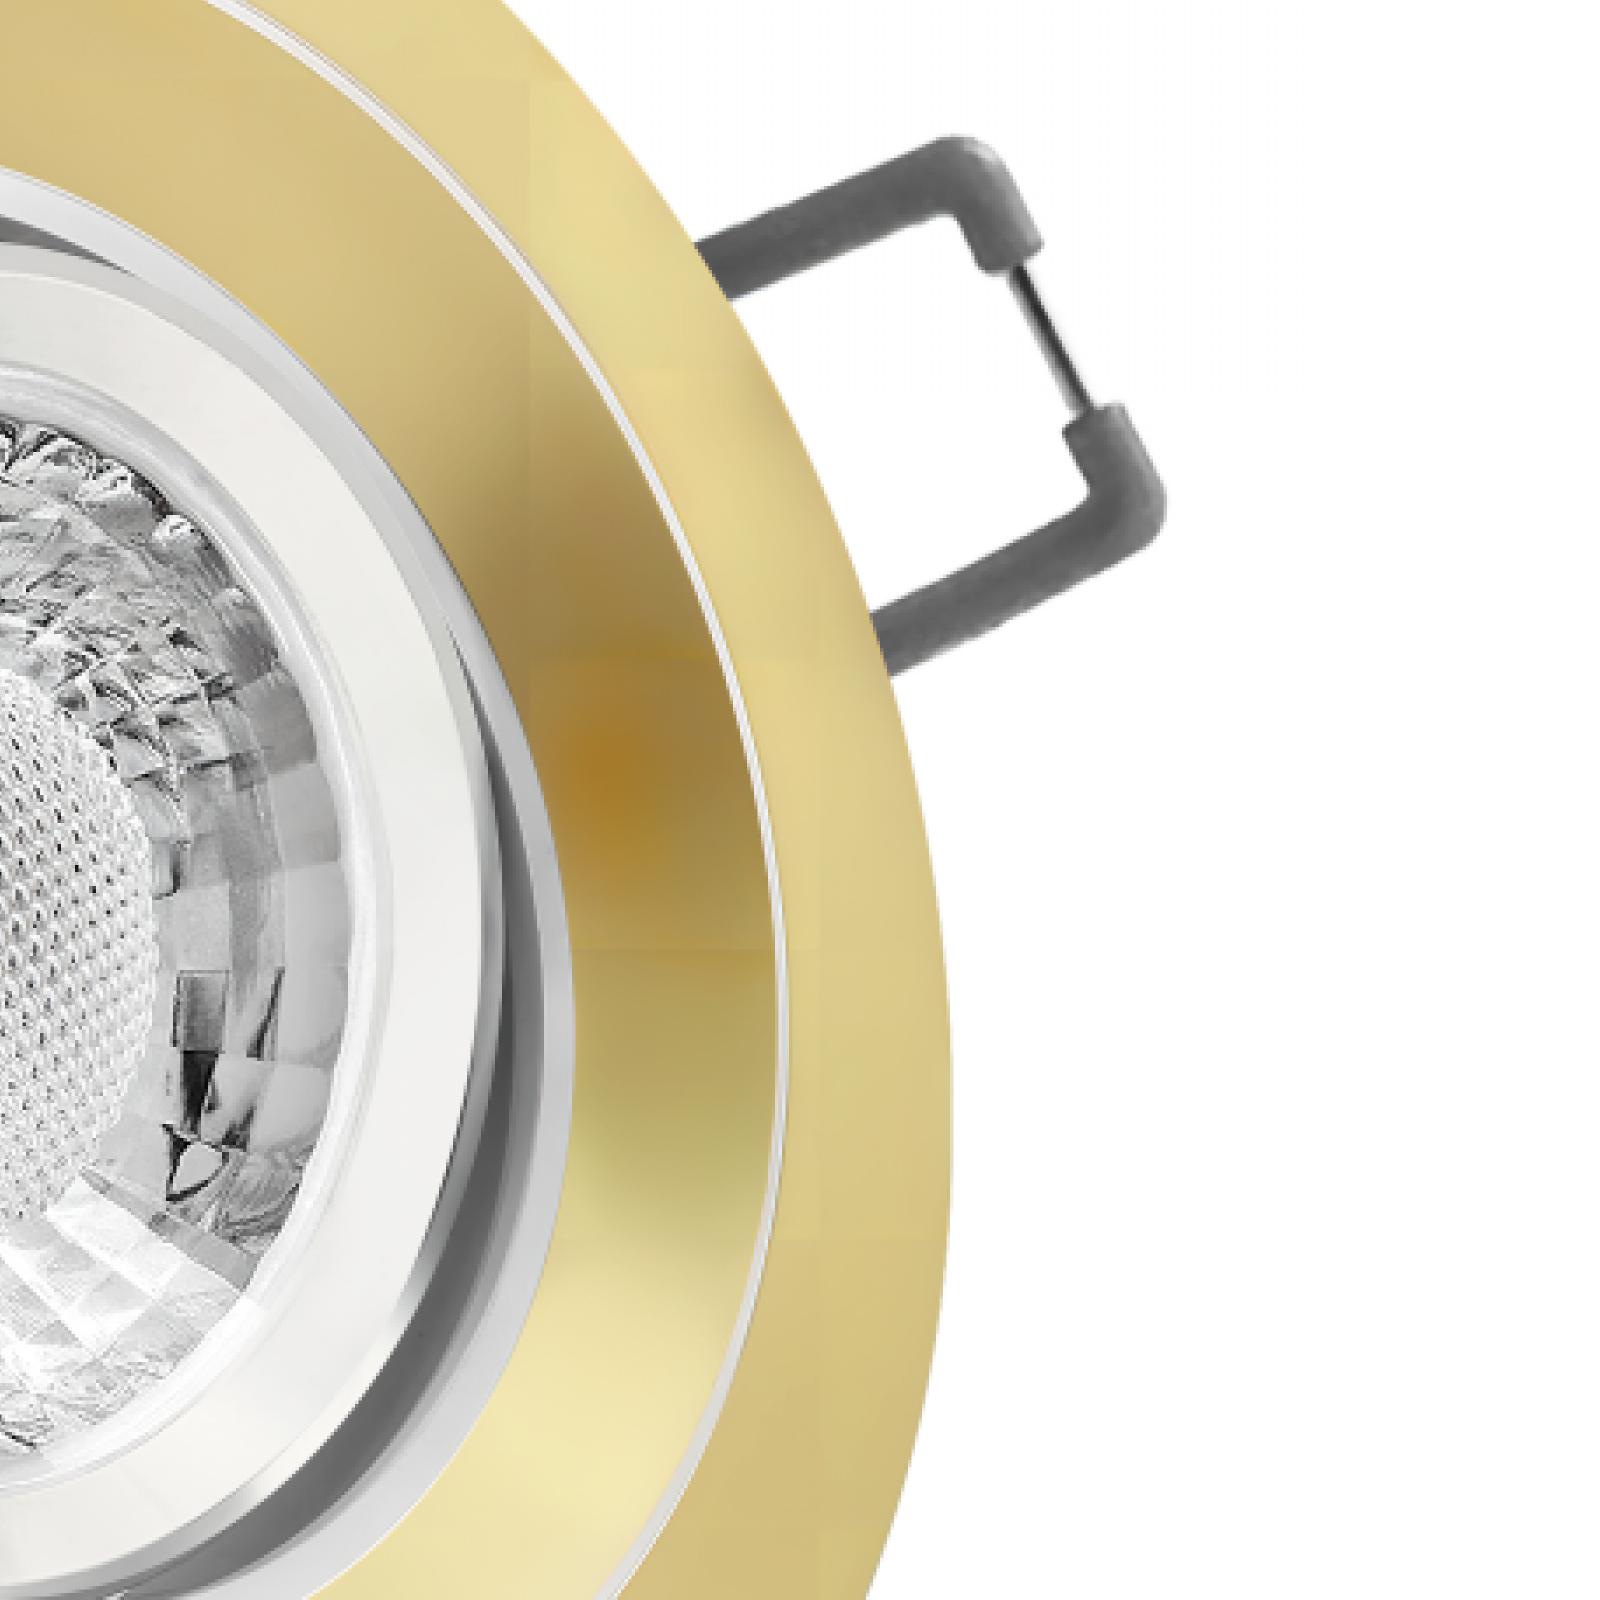 LED Einbaustrahler Gold matt | Runder Einbauspot | 360° schwenkbar | Lochmaß Ø 68mm - 95mm | geringe Einbautiefe 27mm | Anschlussfertig 